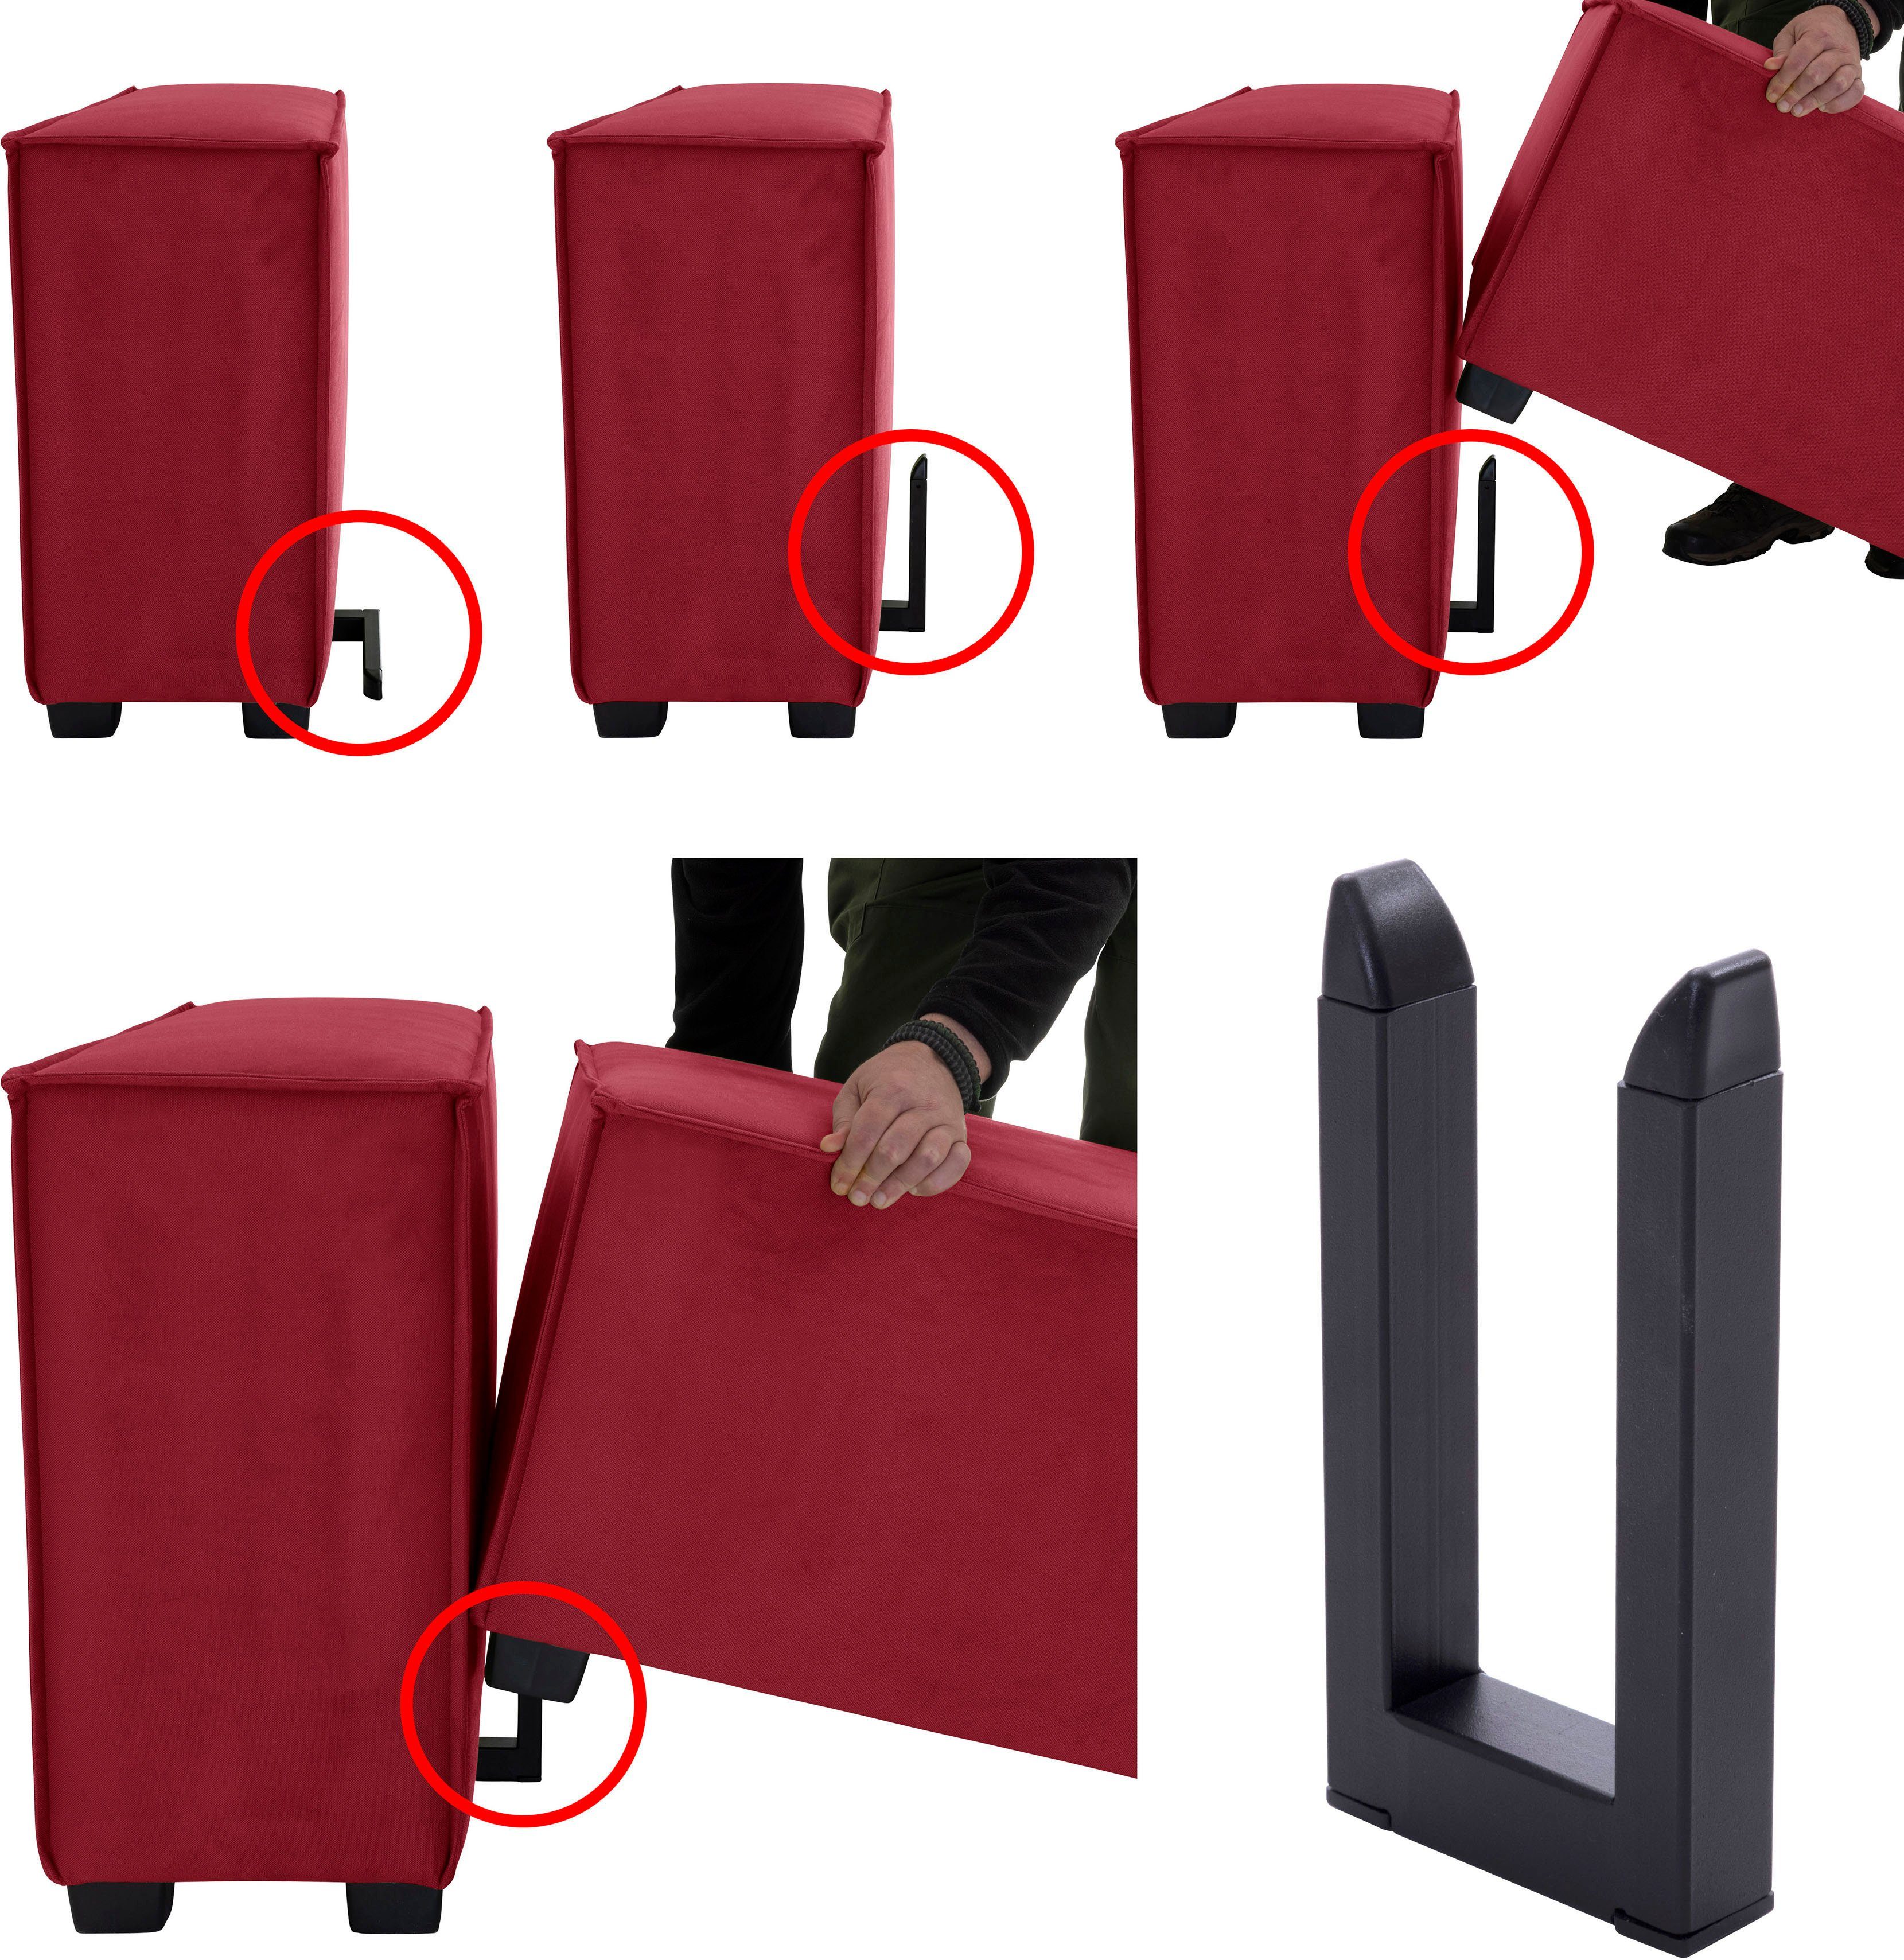 individuell Winzer® MOVE, Sofaelement kombinierbar Max Einzelelement 120/30/78 cm, rot